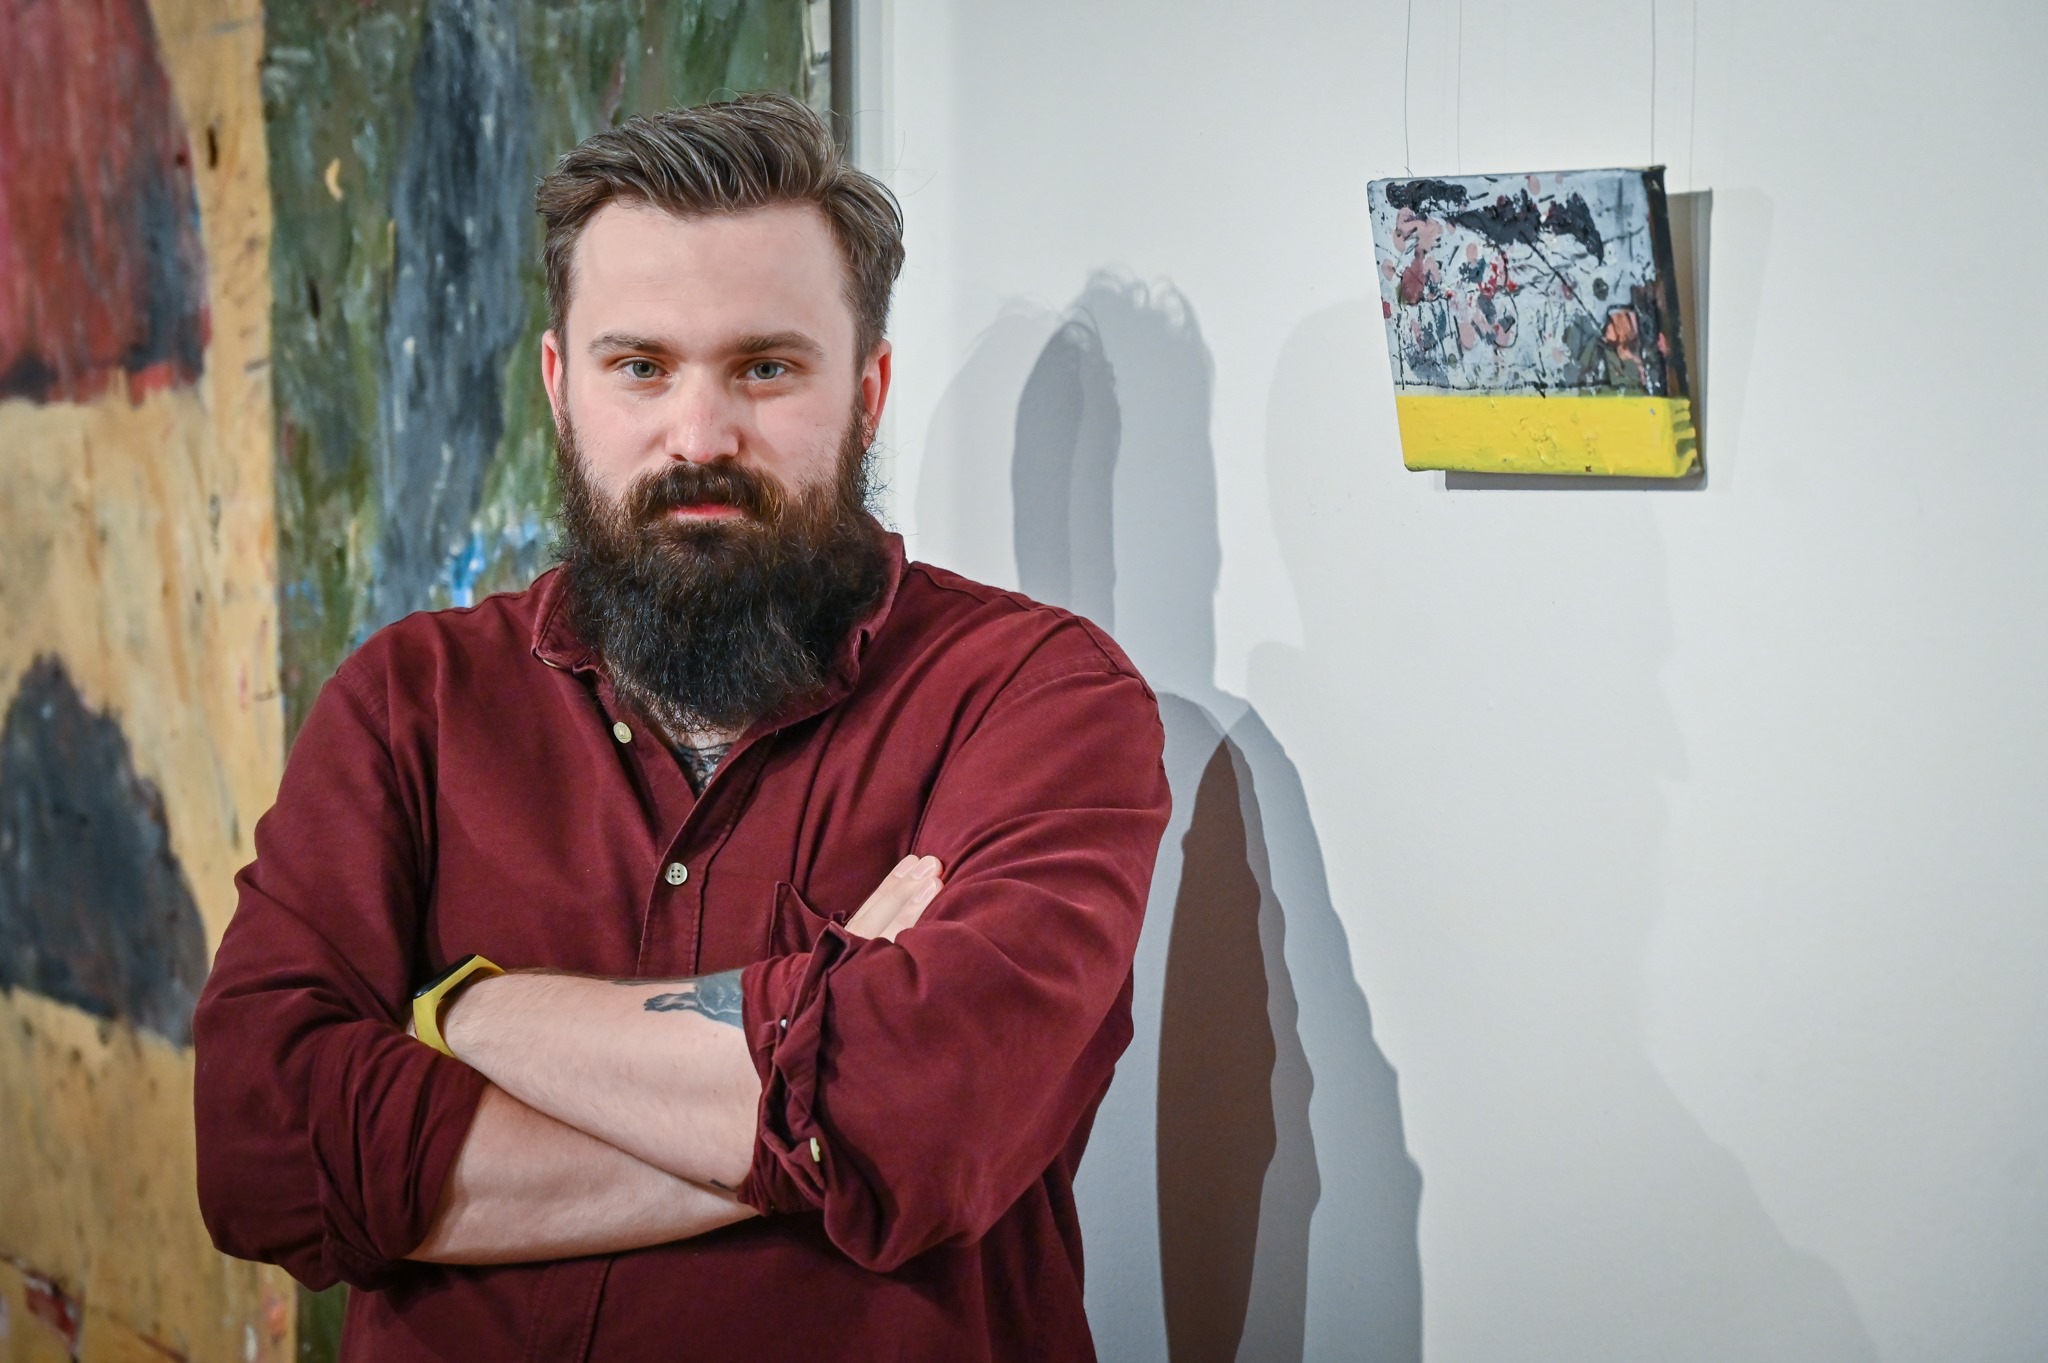 Malarstwo Mateusza Pawełczyka zagości w Ośrodku Promocji Kultury "Gaude Mater" 4